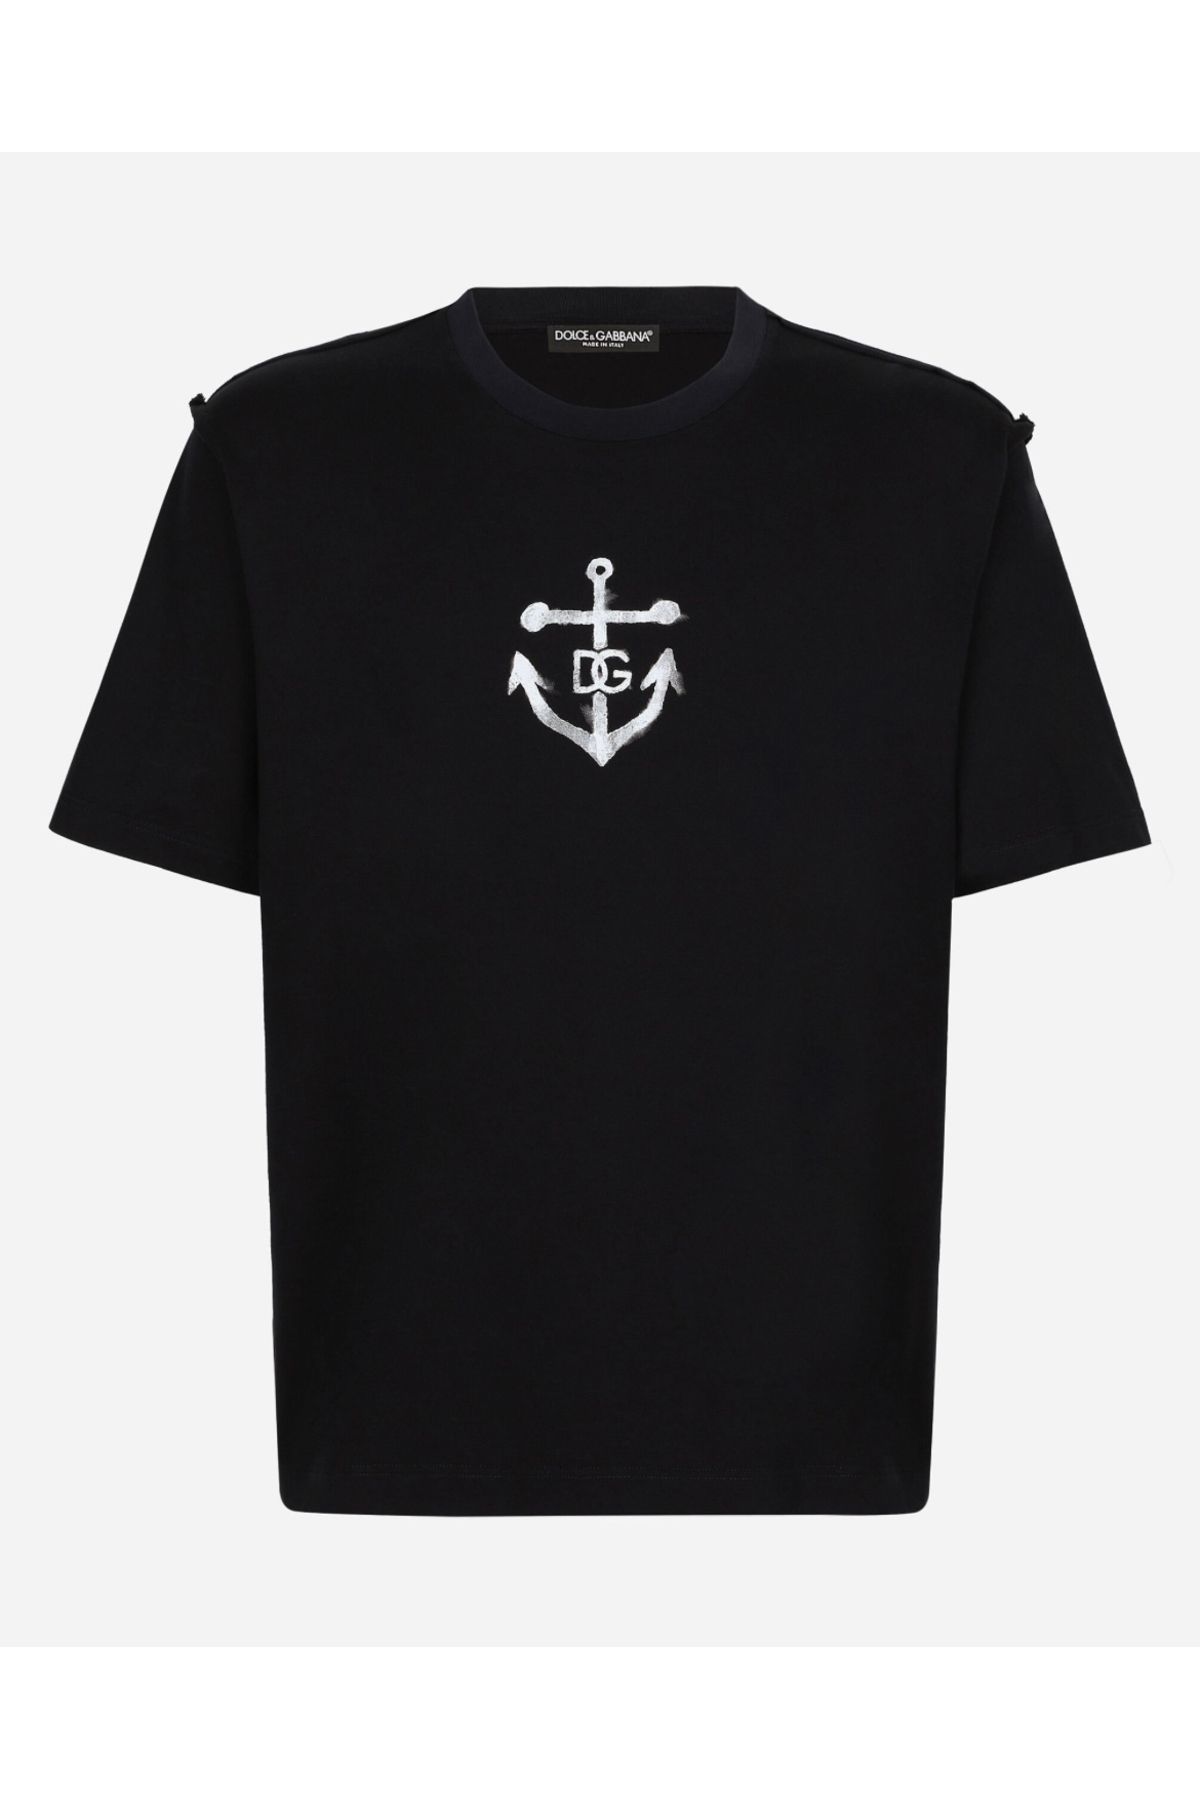 Dolce&Gabbana Marina Print Cotton T-Shirt